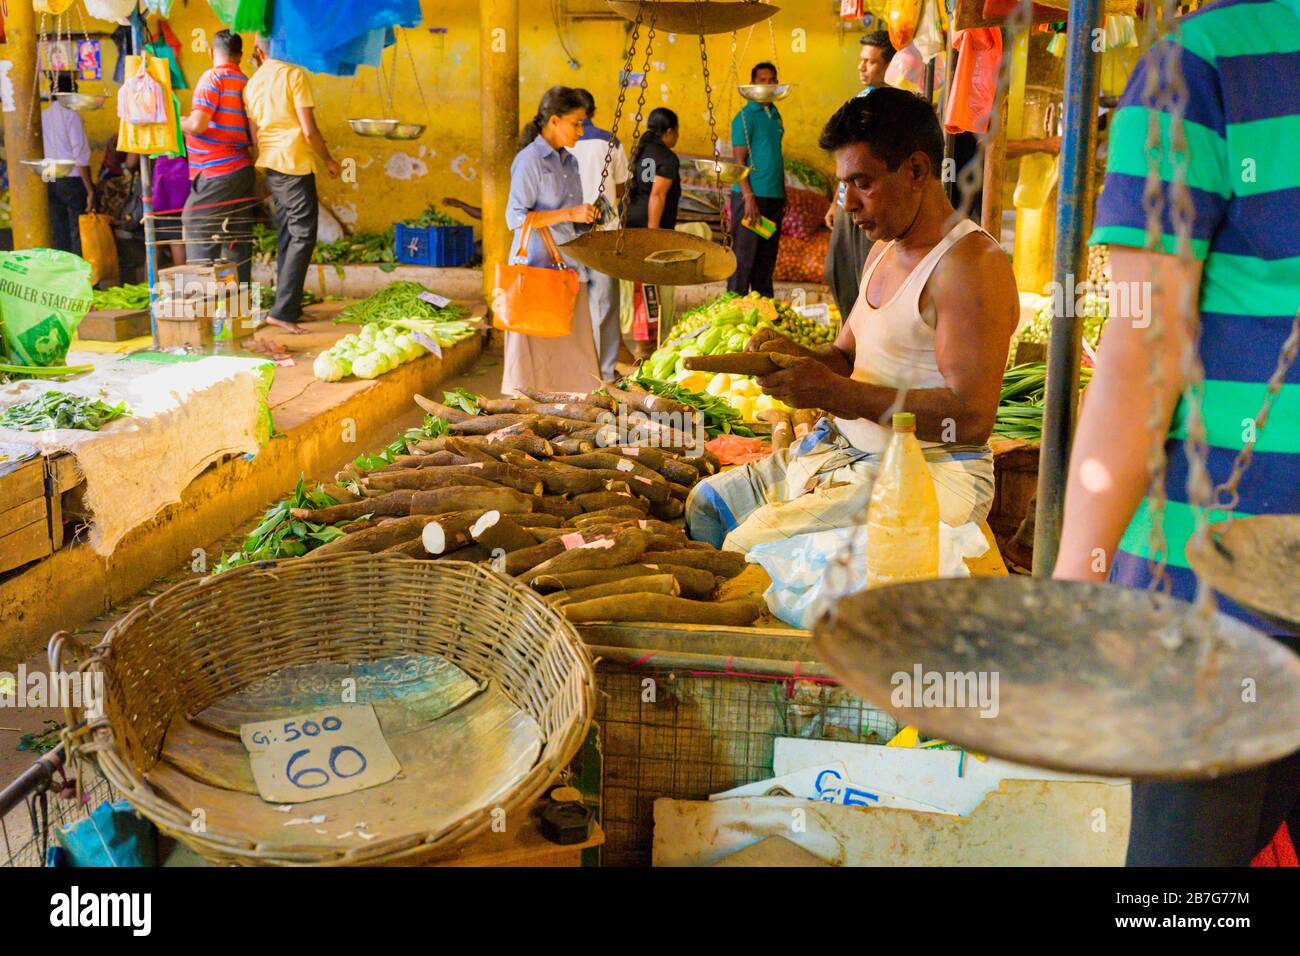 Sur de Asia Sri Lanka Kandy Sinhala Provincia Central Antigua capital alimentación mercado Central Municipal verduras tropicales escalas naminam tapioca kappa Foto de stock